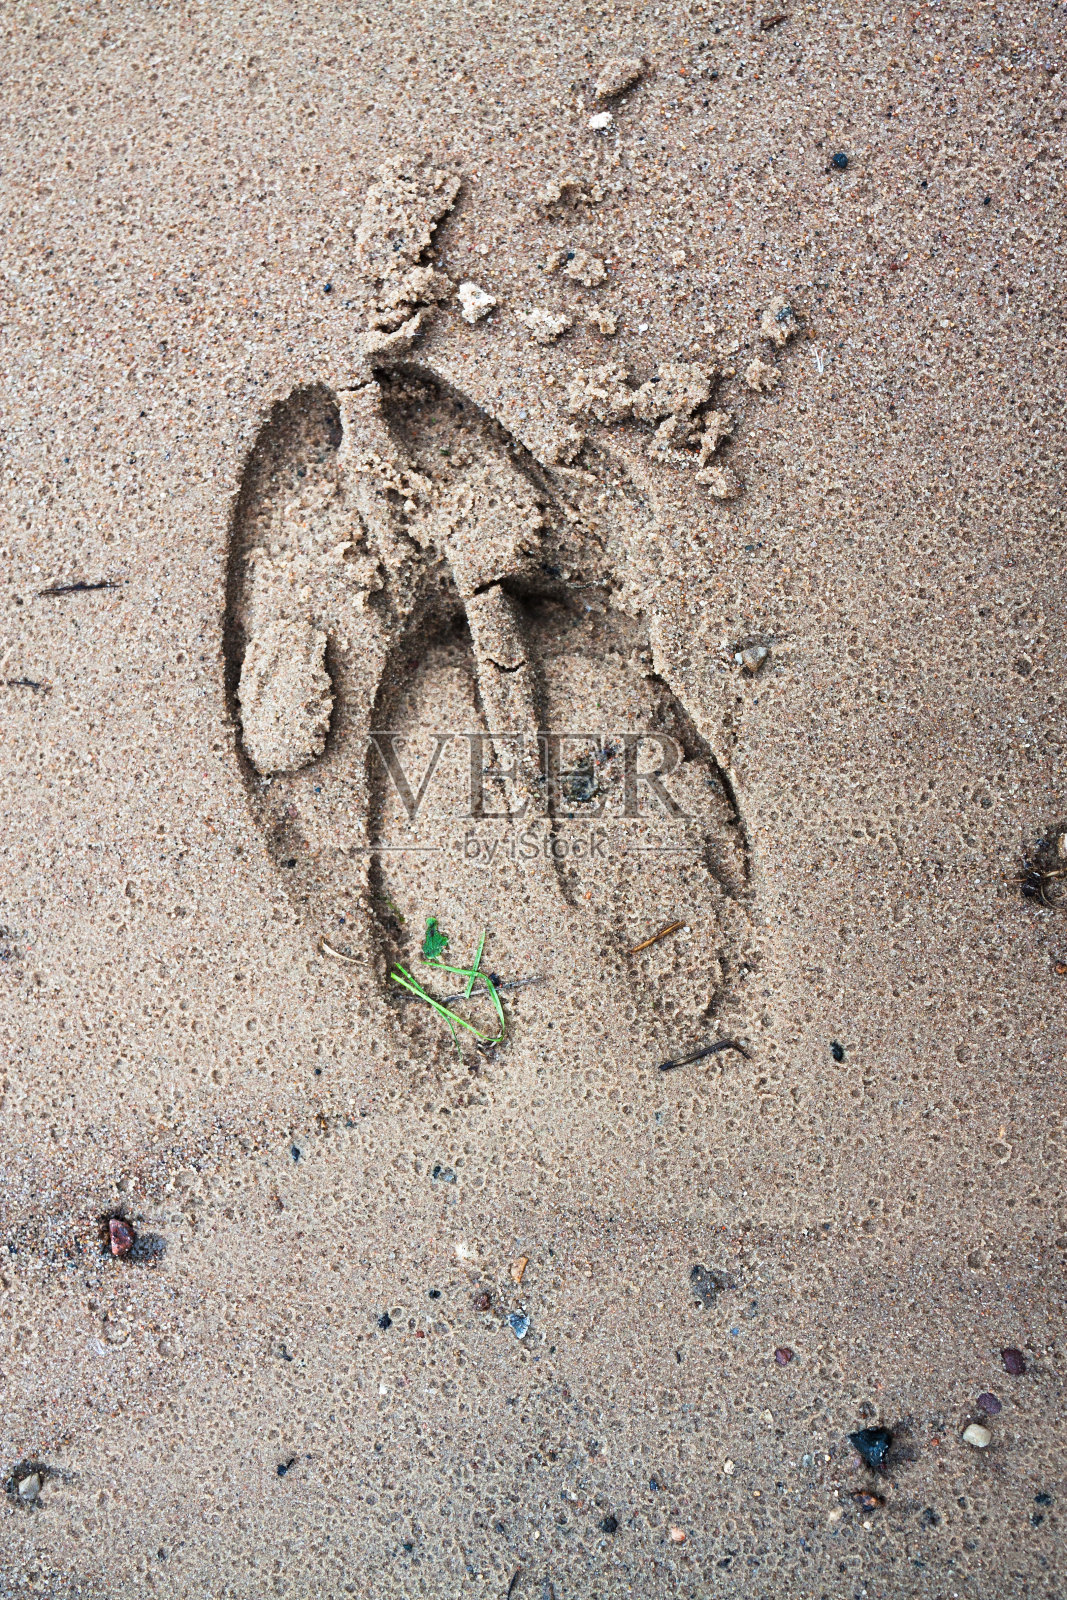 湿沙上有麋鹿的脚印照片摄影图片